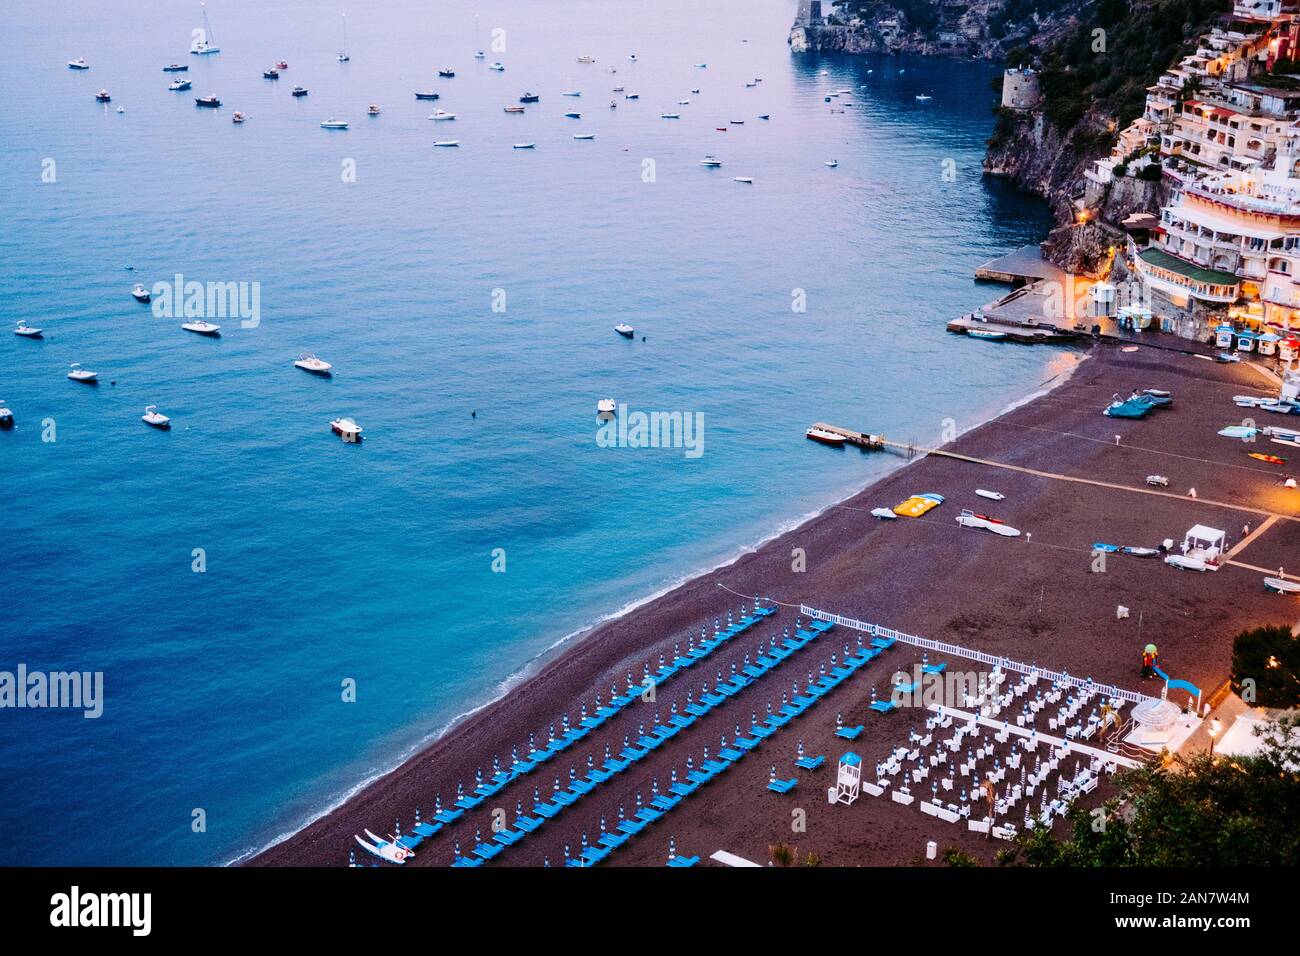 The city of Positano, Amalfi Coast, Italy Stock Photo